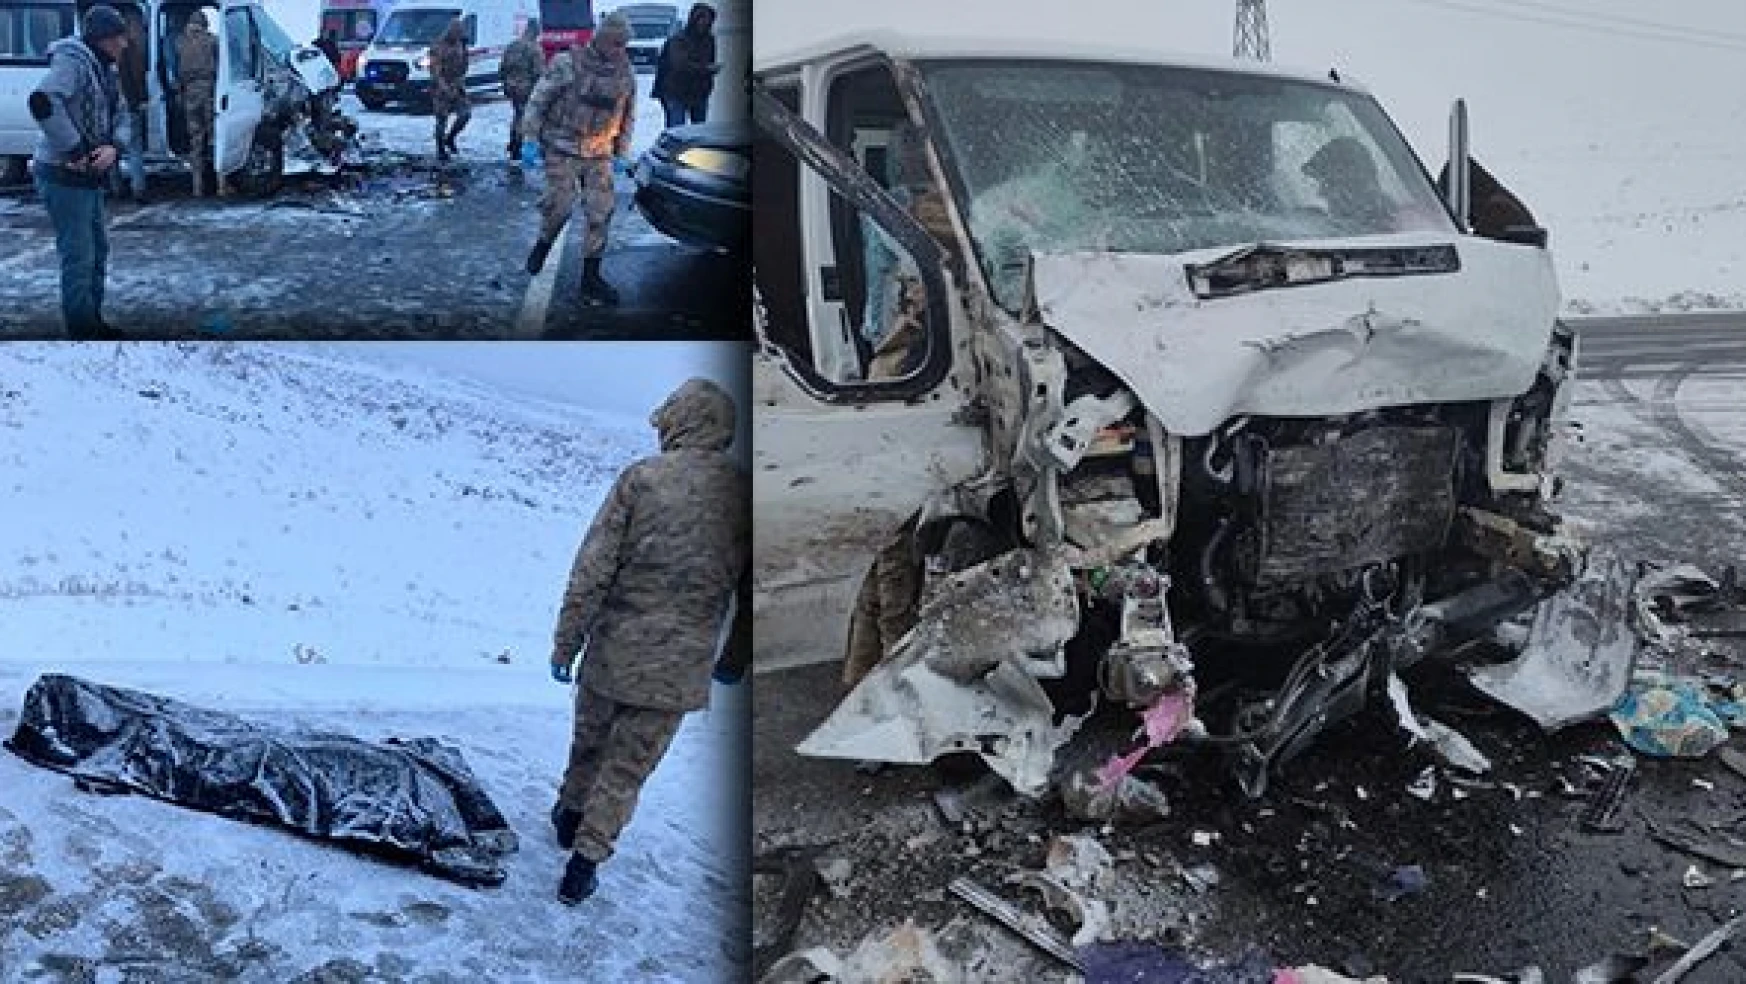 Karlı zeminde yoldan çıkan minibüs otomobille çarpıştı: 1 ölü, 3 yaralı